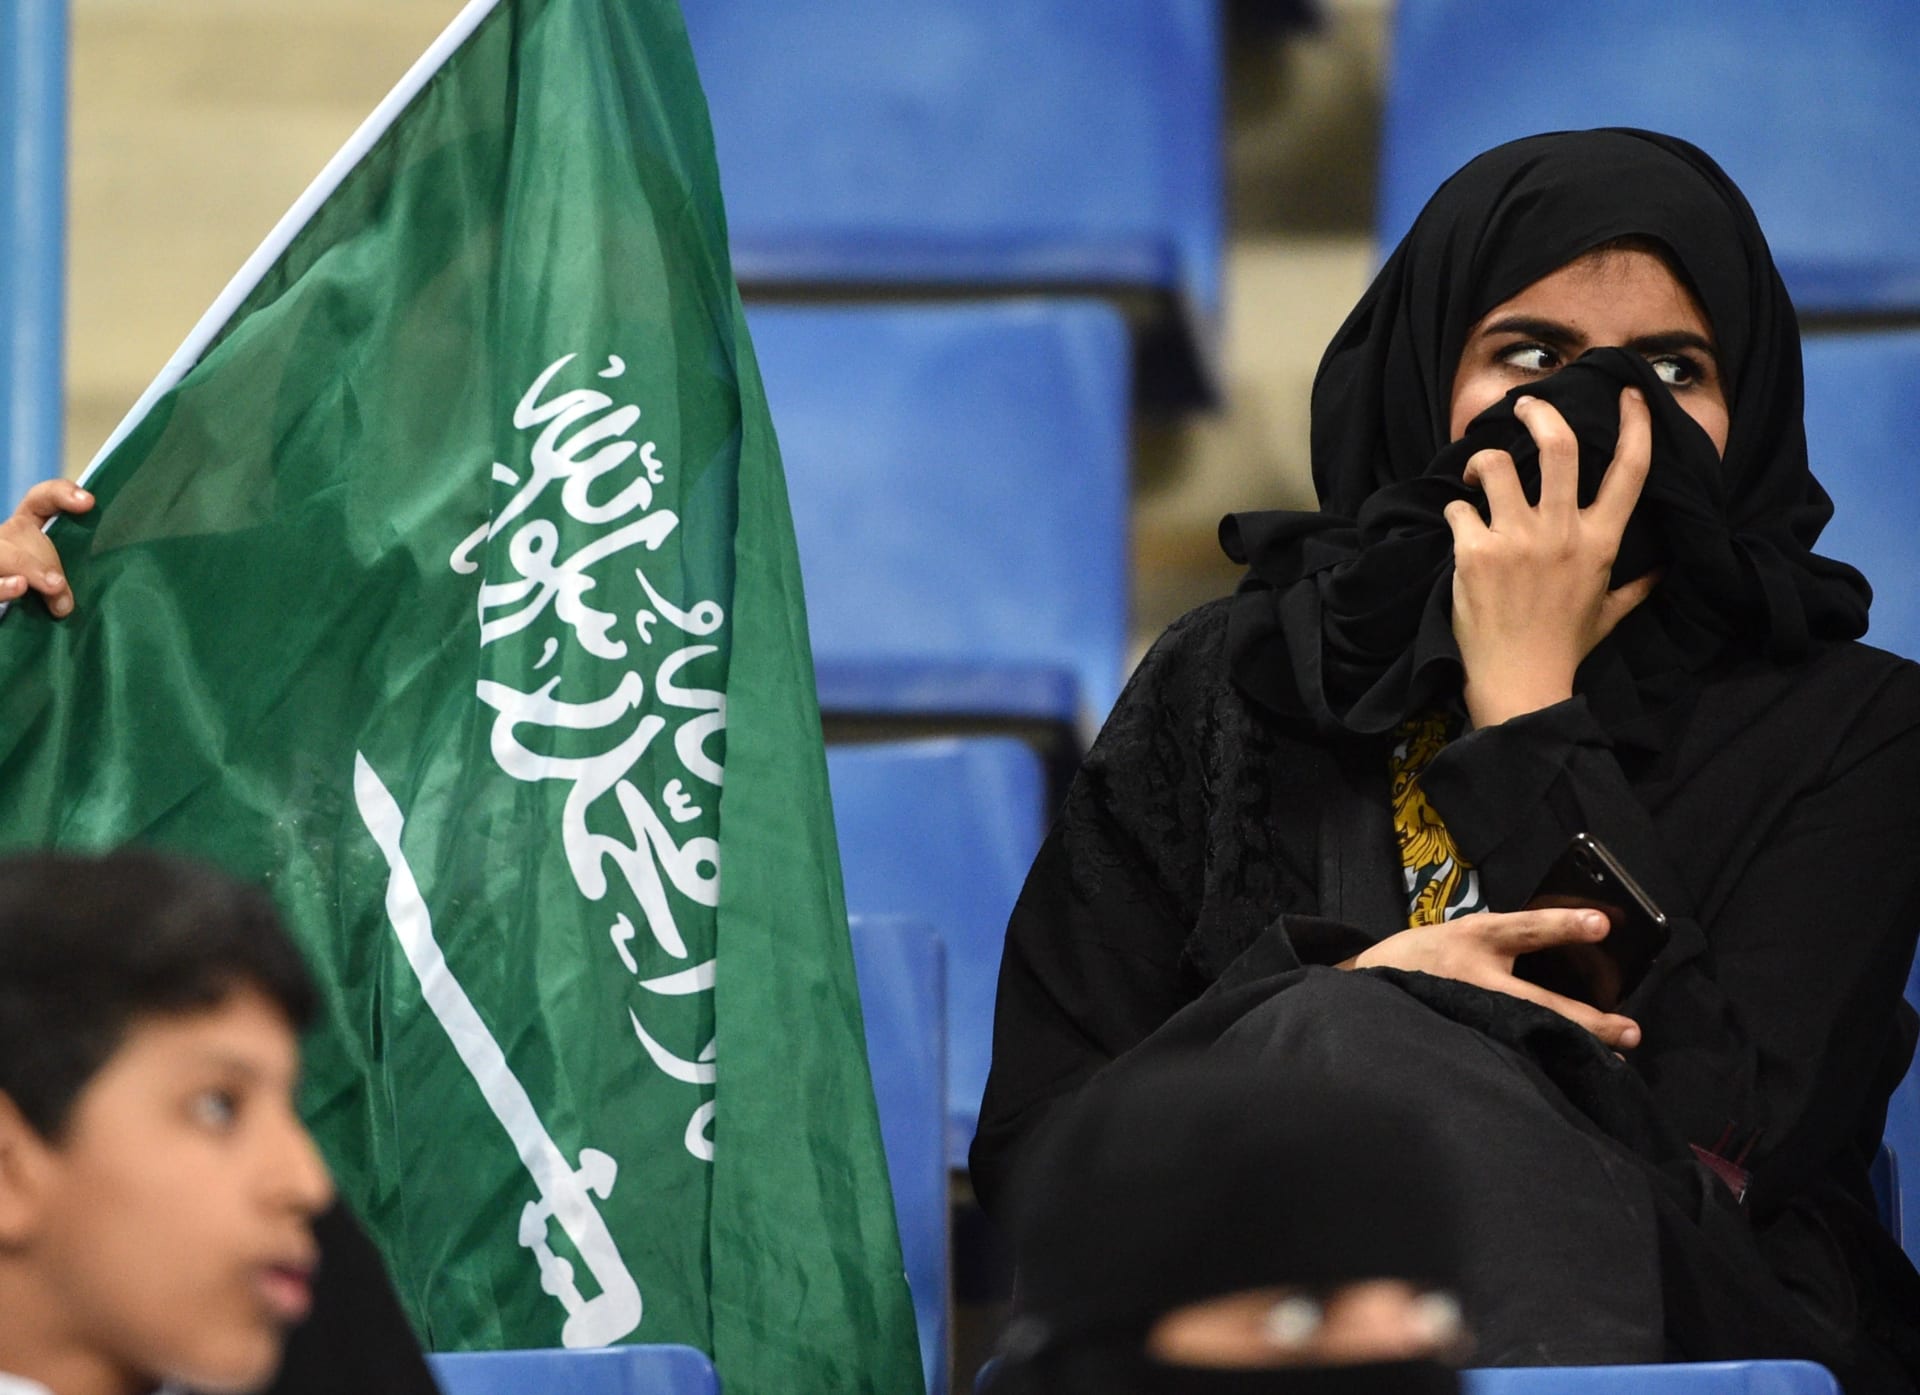 دوري السعودية للسيدات.. انتهاء أول مباراة في التاريخ بالتعادل